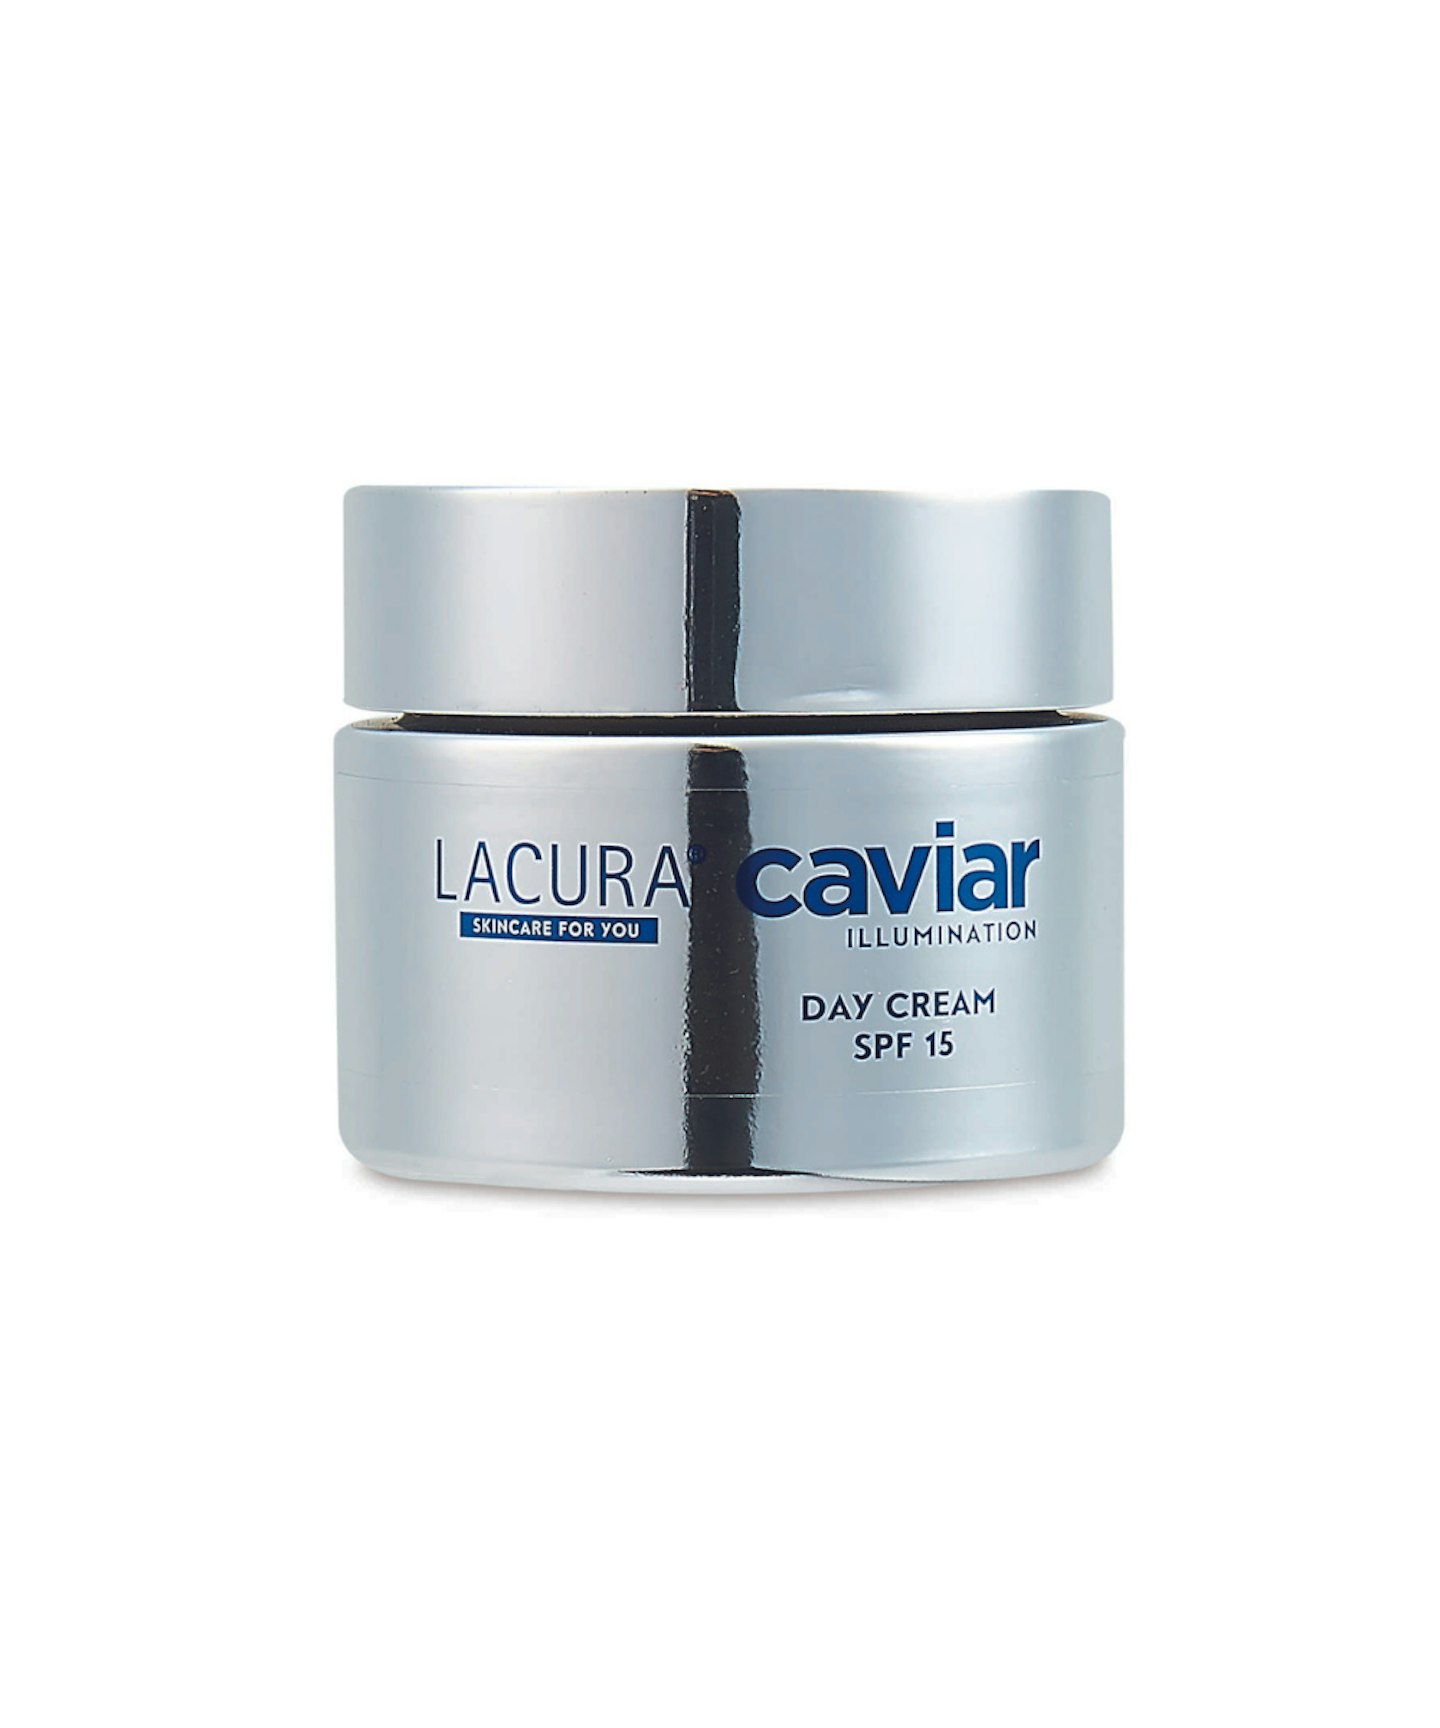 Lacura Caviar Illumination Day Cream